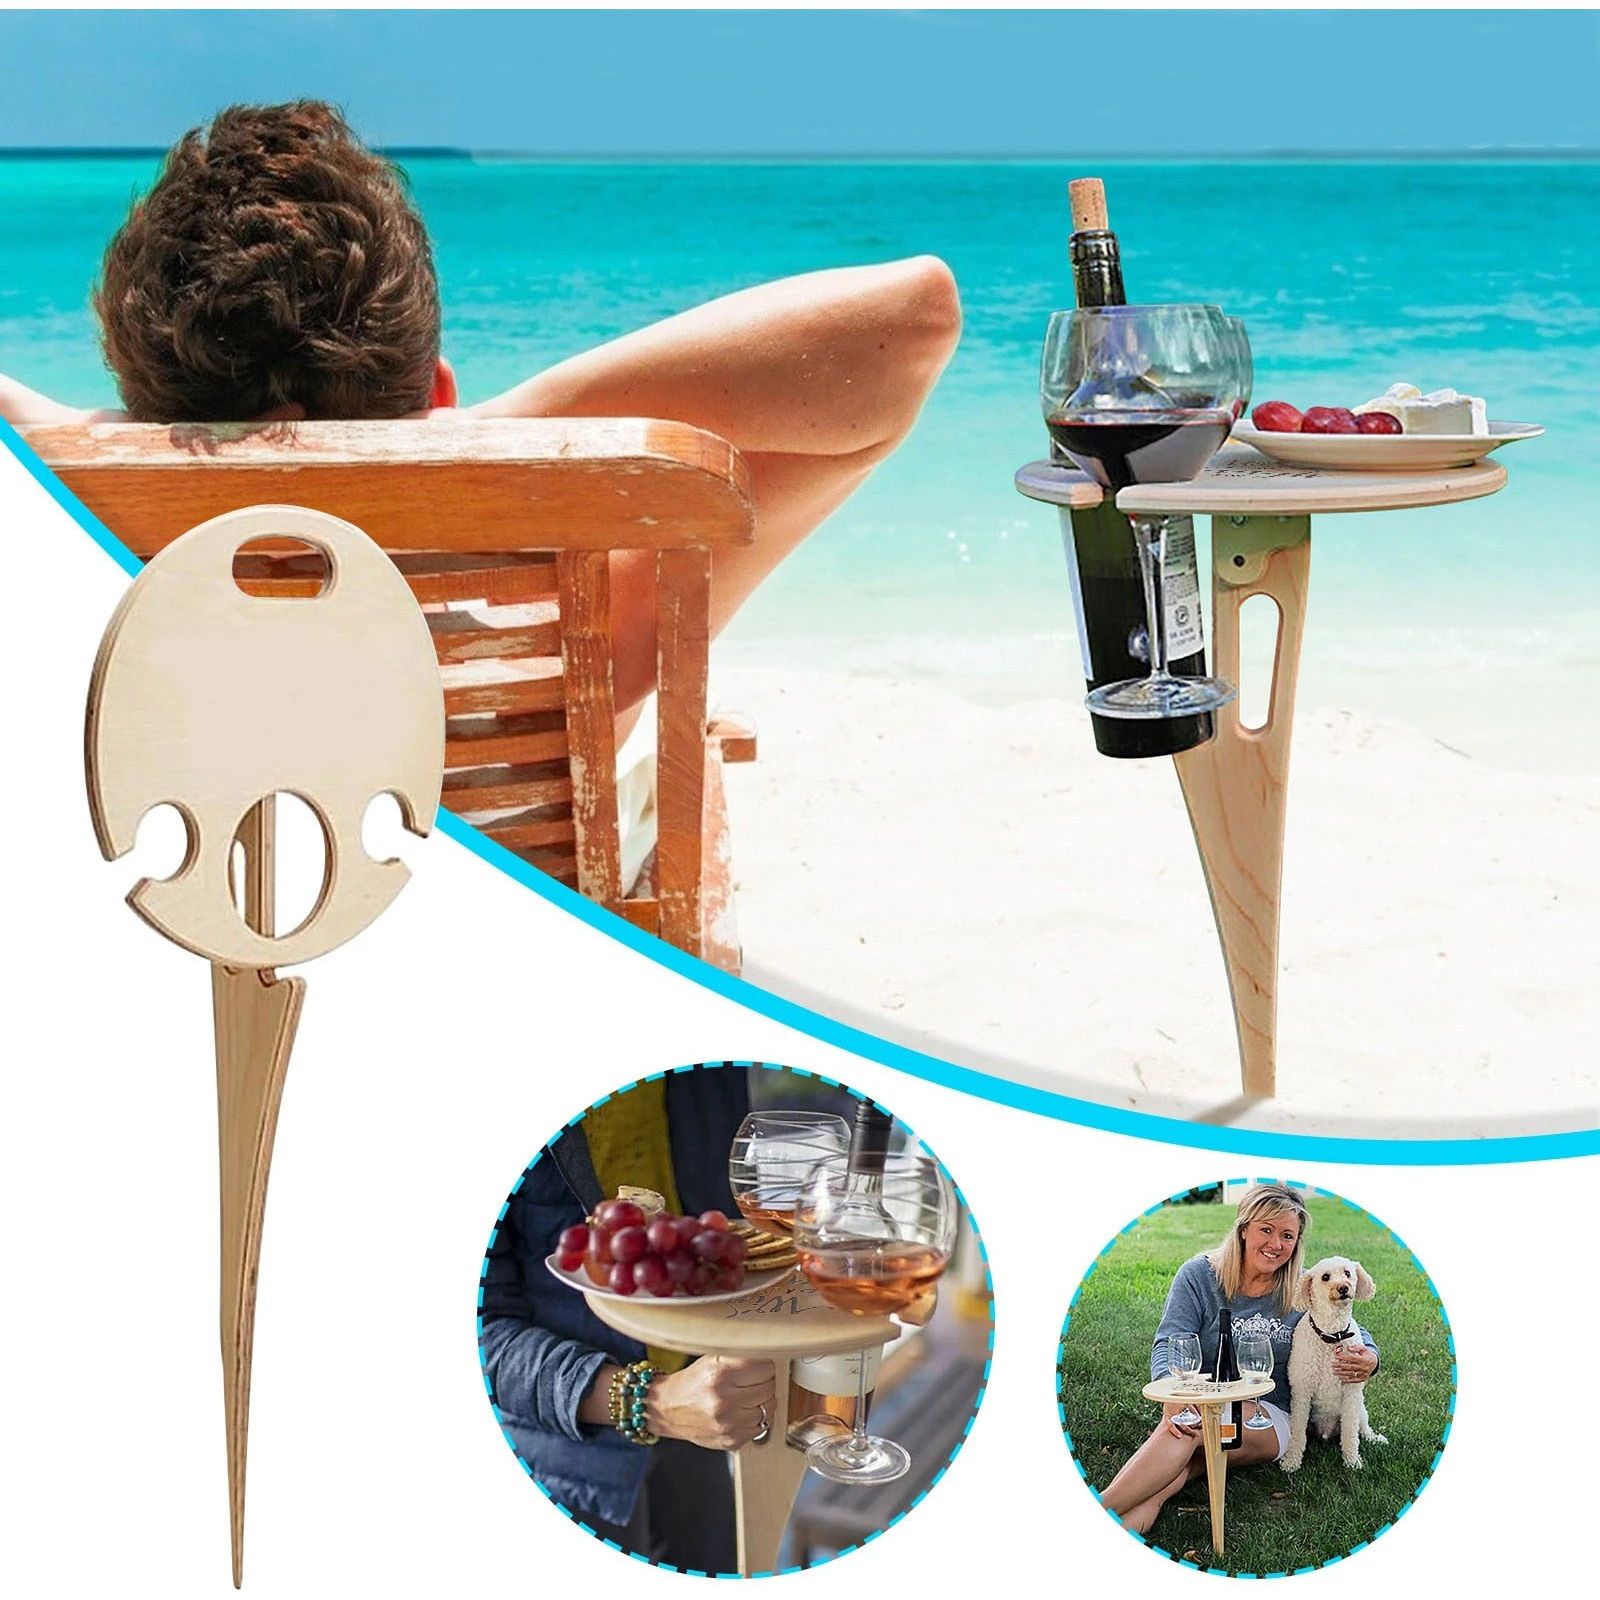 Beach Table - Sunny Sydney Australia - Famous Outdoor Gear Store